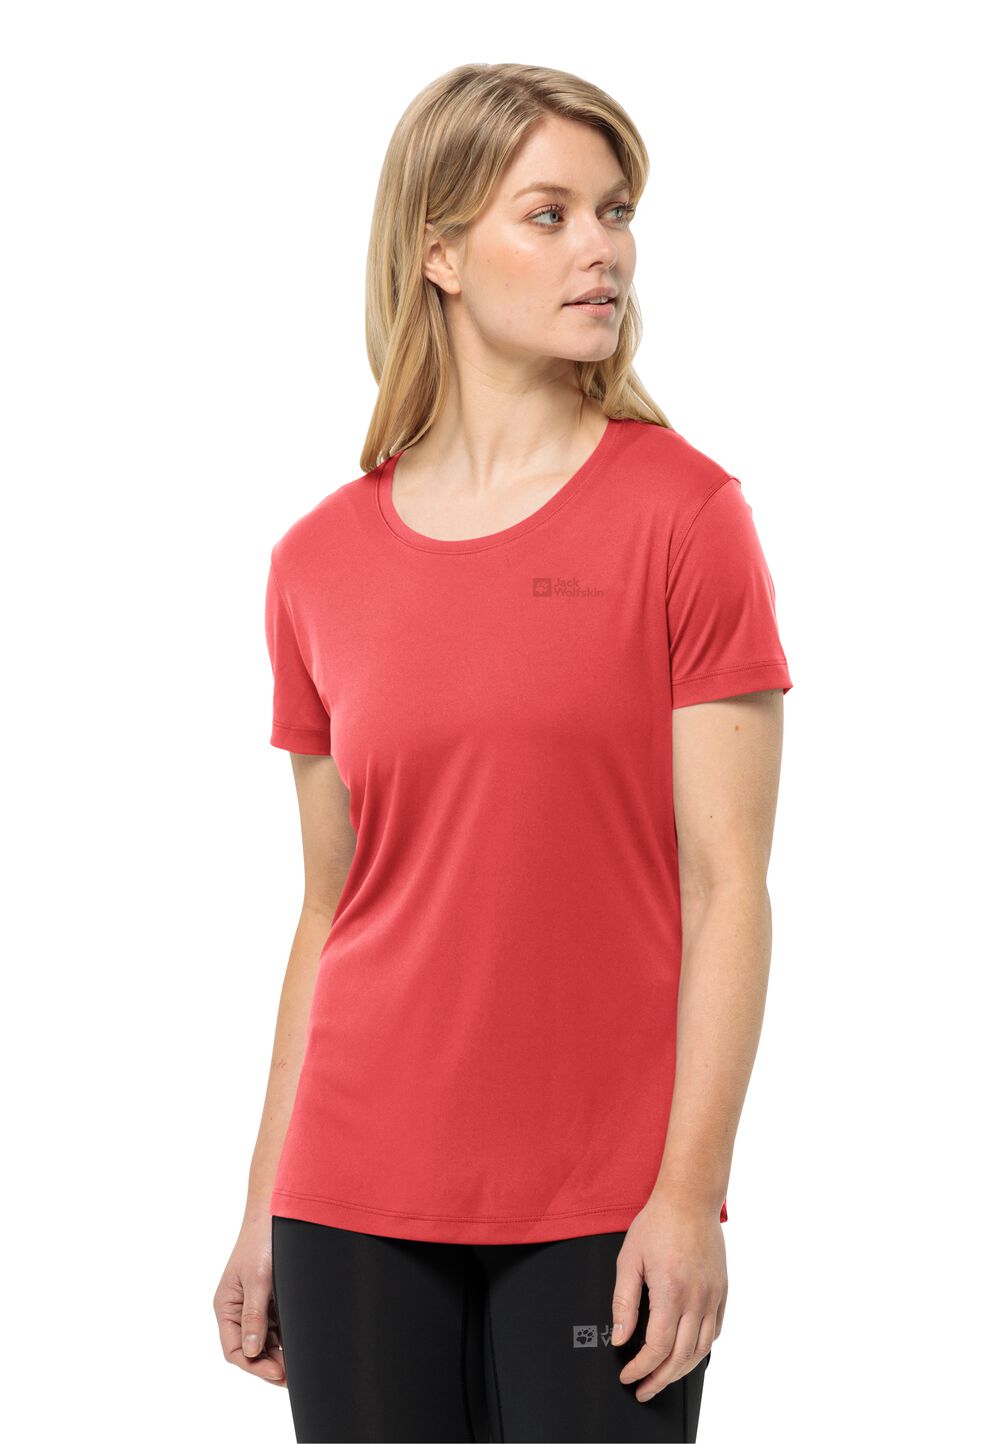 Jack Wolfskin Tech T-Shirt Women Functioneel shirt Dames XL rood vibrant red